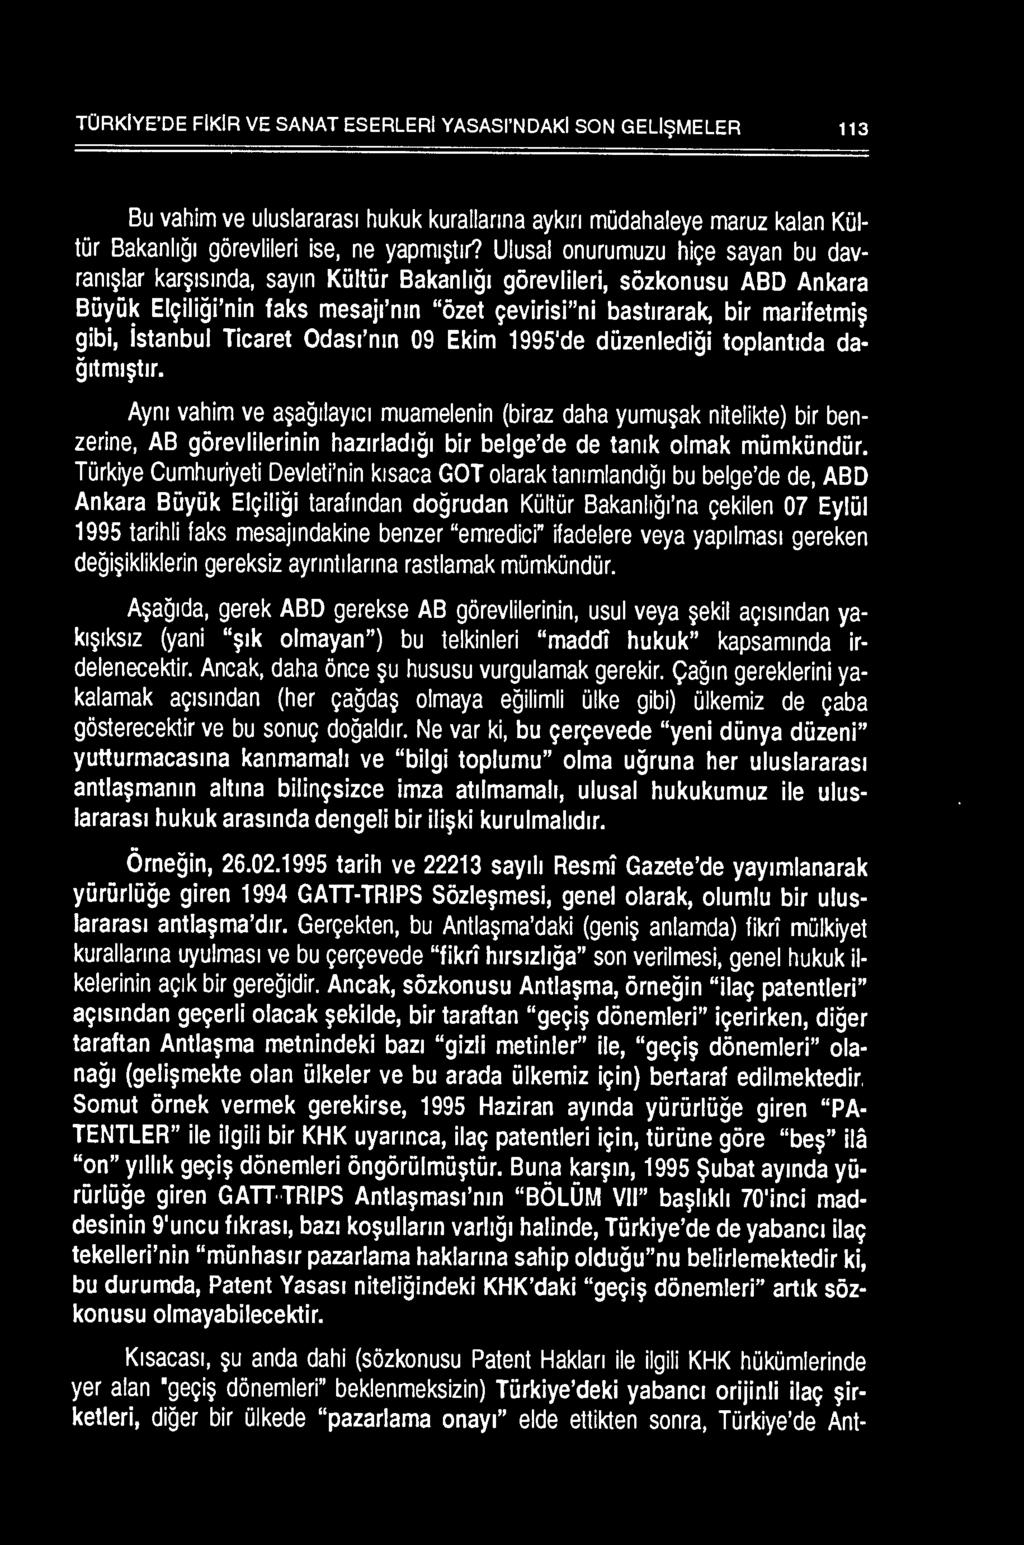 istanbul Ticaret Odas1'nm 09 Ekim 1995'de diizenledigi toplantlda da itml~tlr.